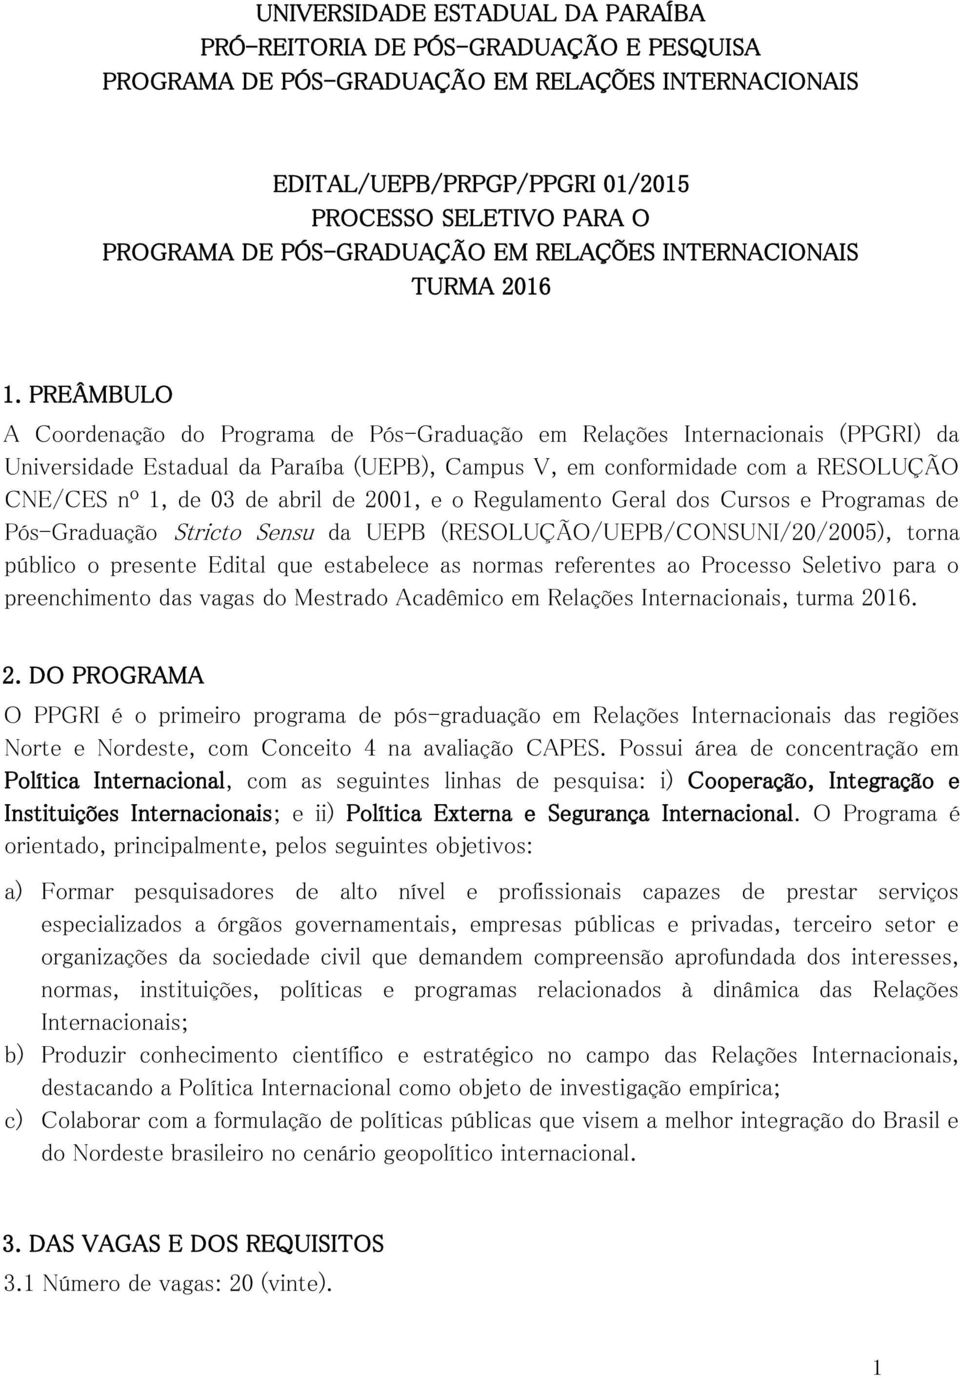 PREÂMBULO A Coordenação do Programa de Pós-Graduação em Relações Internacionais (PPGRI) da Universidade Estadual da Paraíba (UEPB), Campus V, em conformidade com a RESOLUÇÃO CNE/CES nº 1, de 03 de